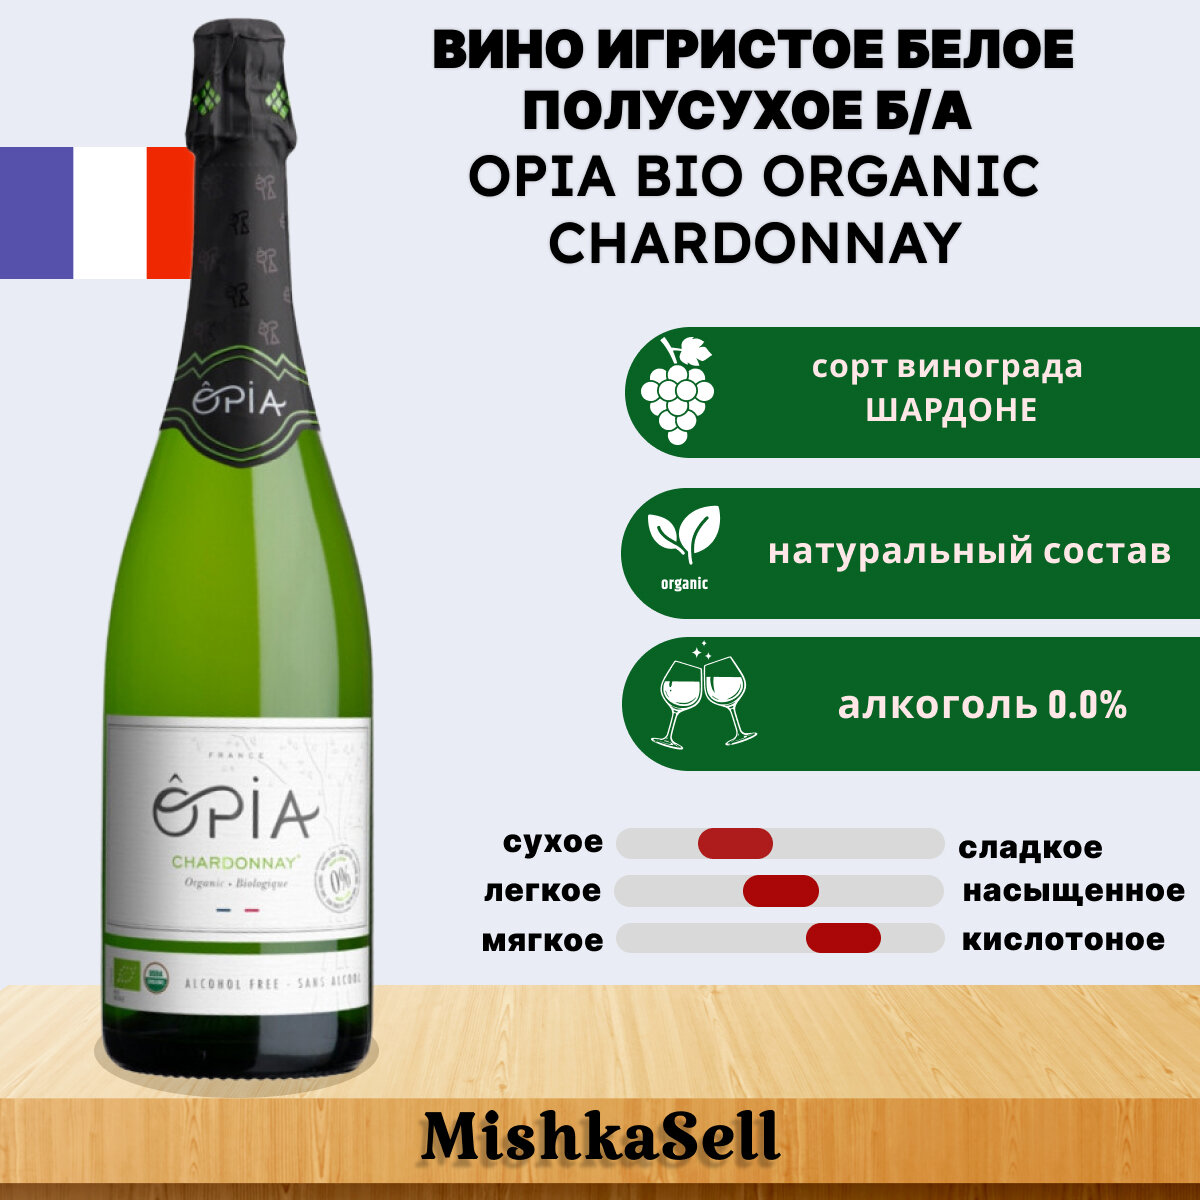 Безалкогольное вино игристое белое OPIA BIO ORGANIC Chardonnay